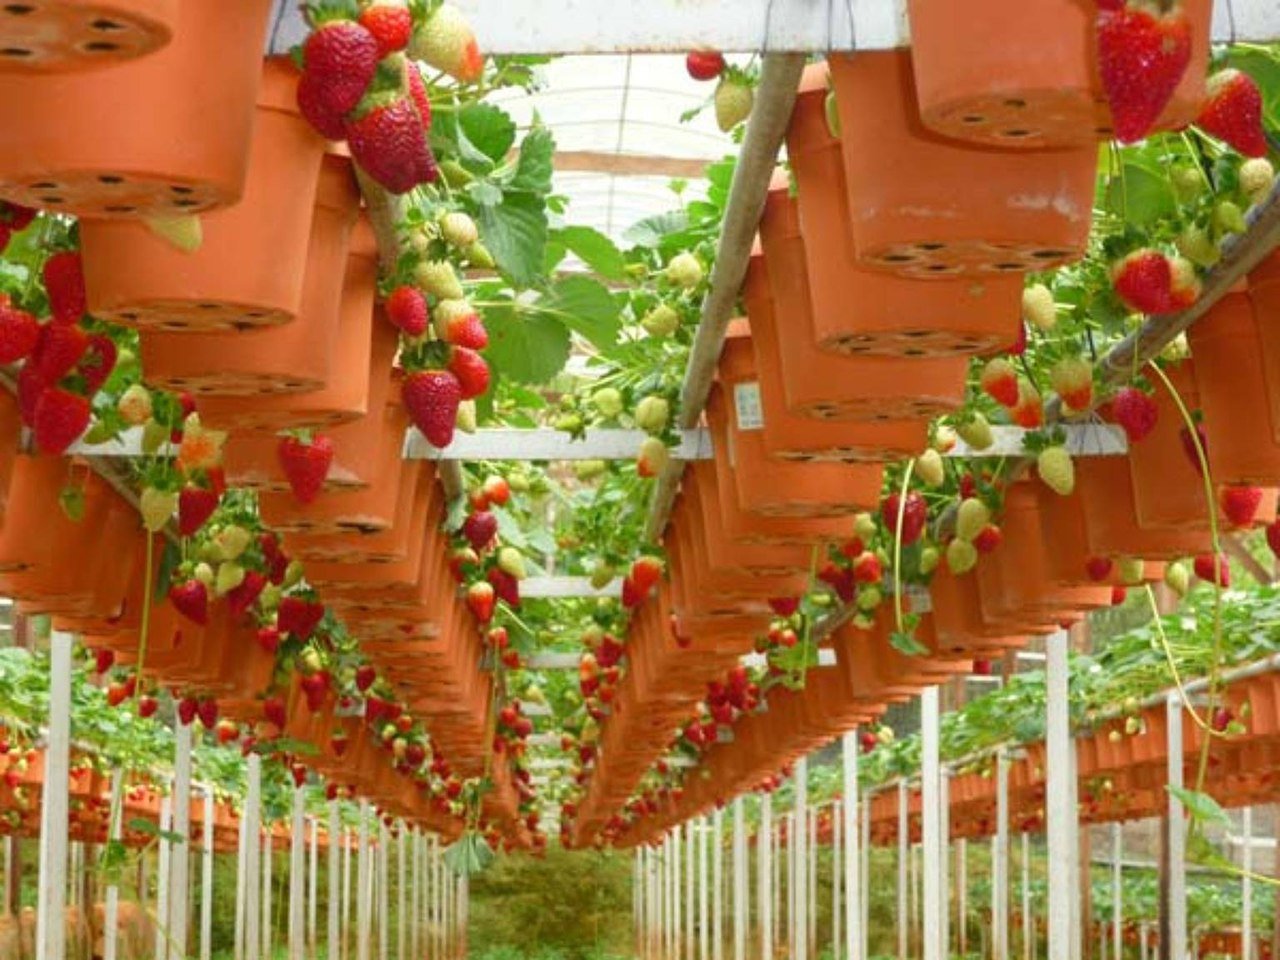 Пошаговая инструкция выращивания томатов по голландской технологи